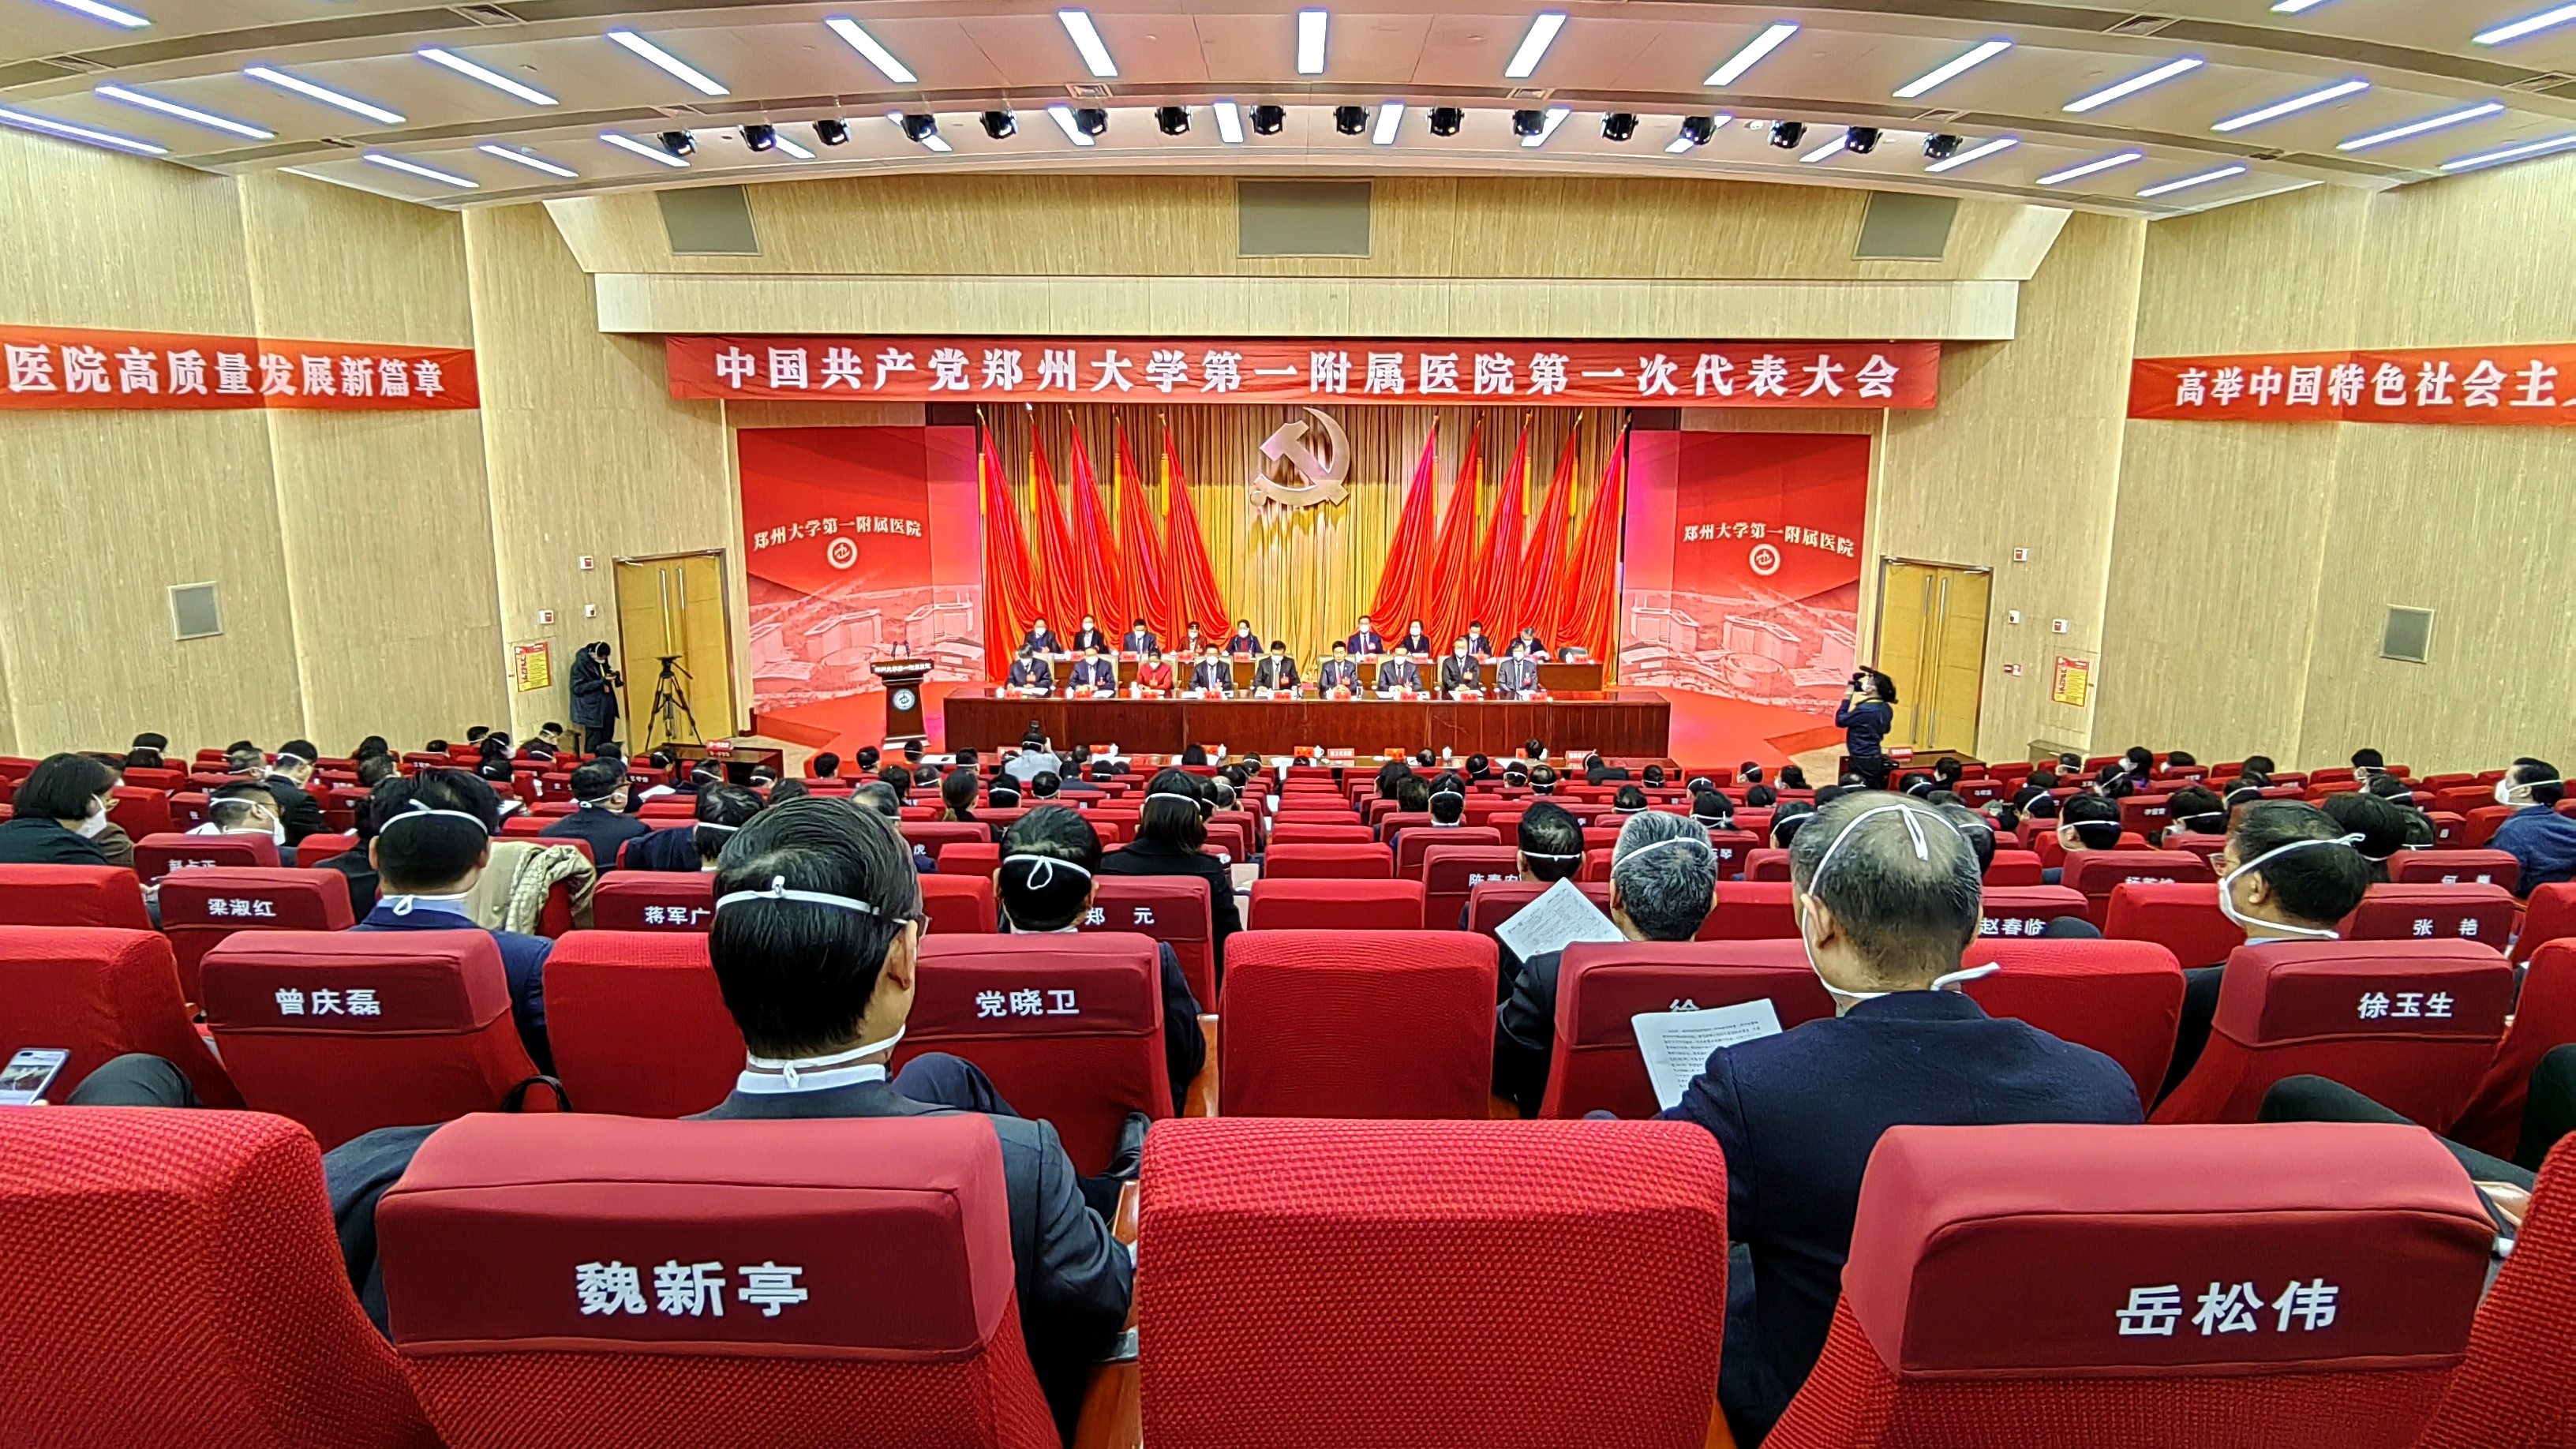 中国共产党郑州大学第一附属医院第一次代表大会召开